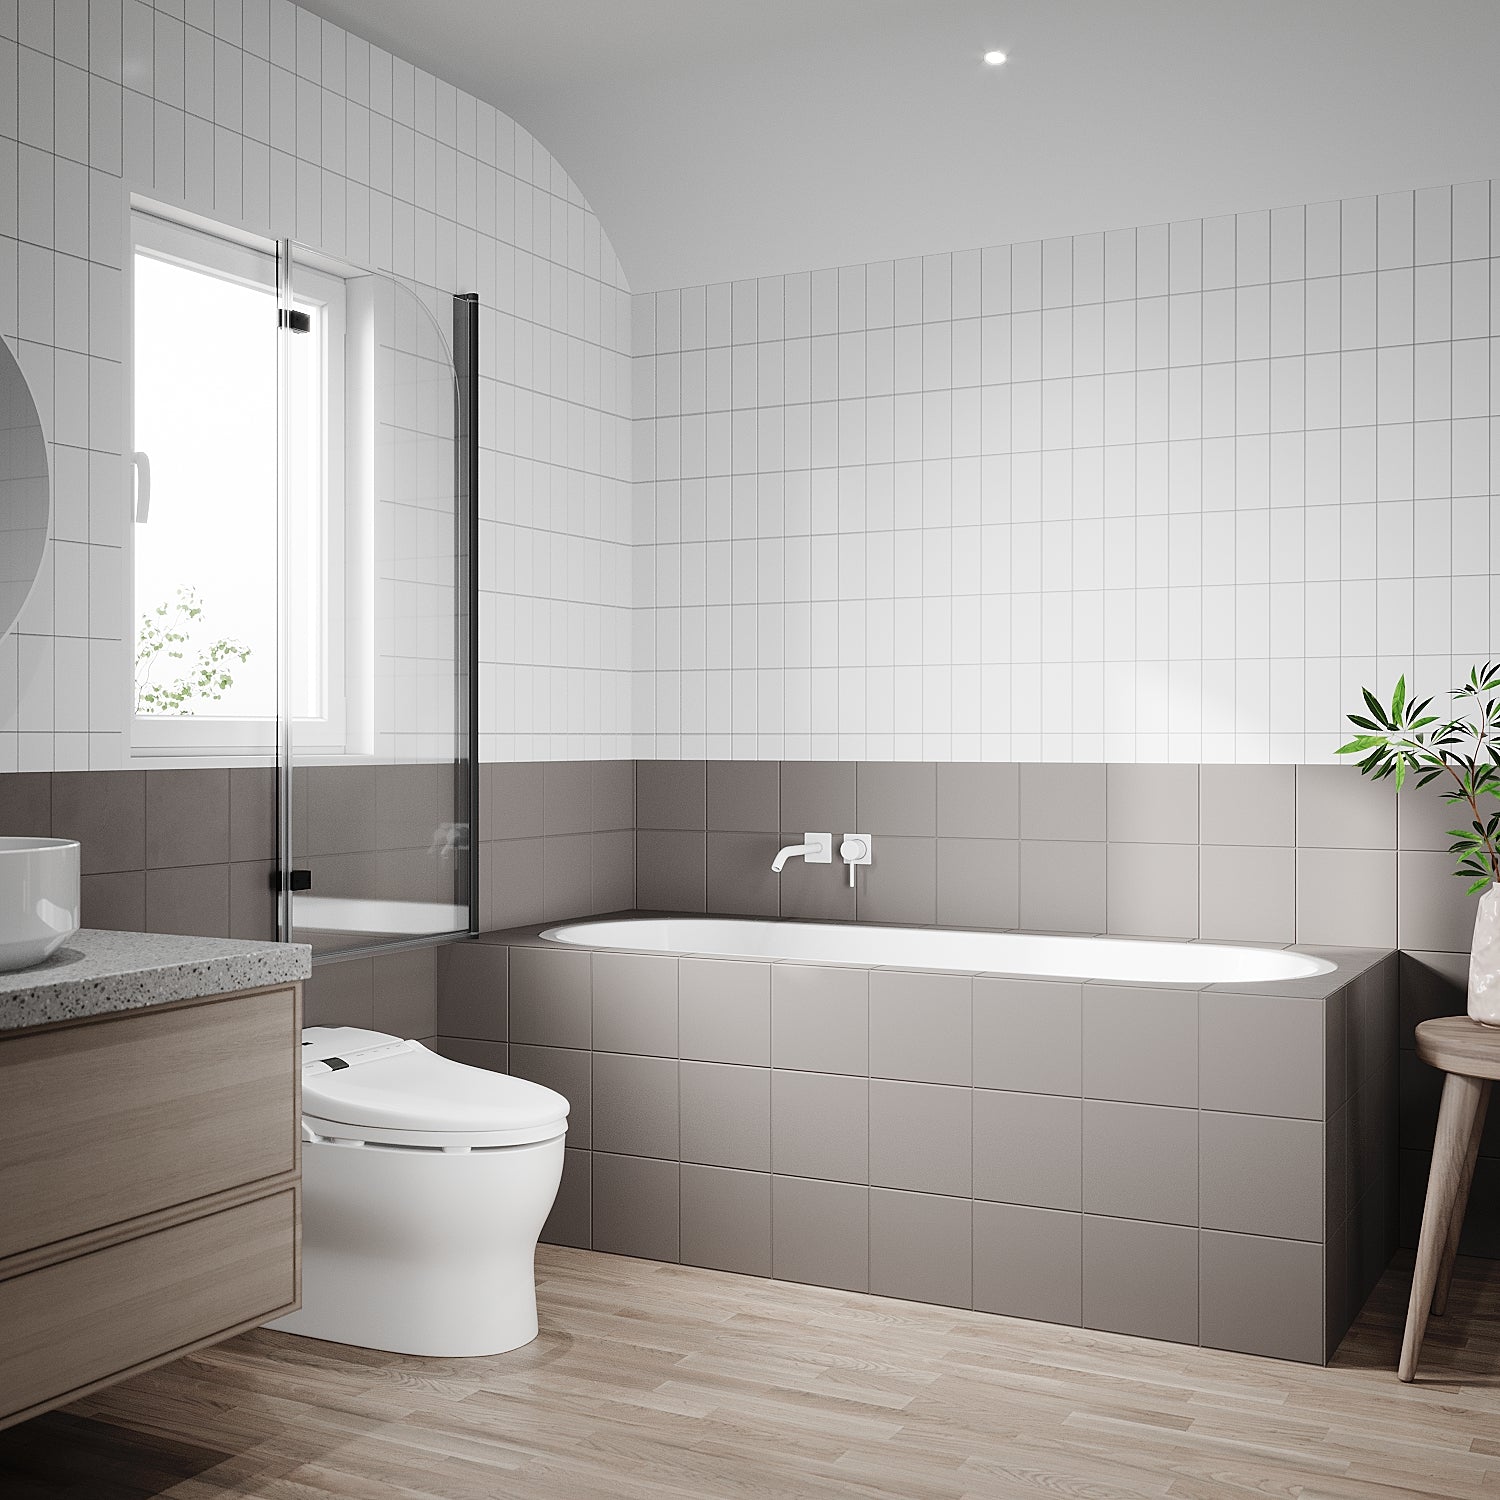 SONNI Duschwand für Badewanne Schwarz NANO-GLAS Badewannenaufsatz 2-teilig faltbar 120x140 cm(BxH) Duschabtrennung Badewanne